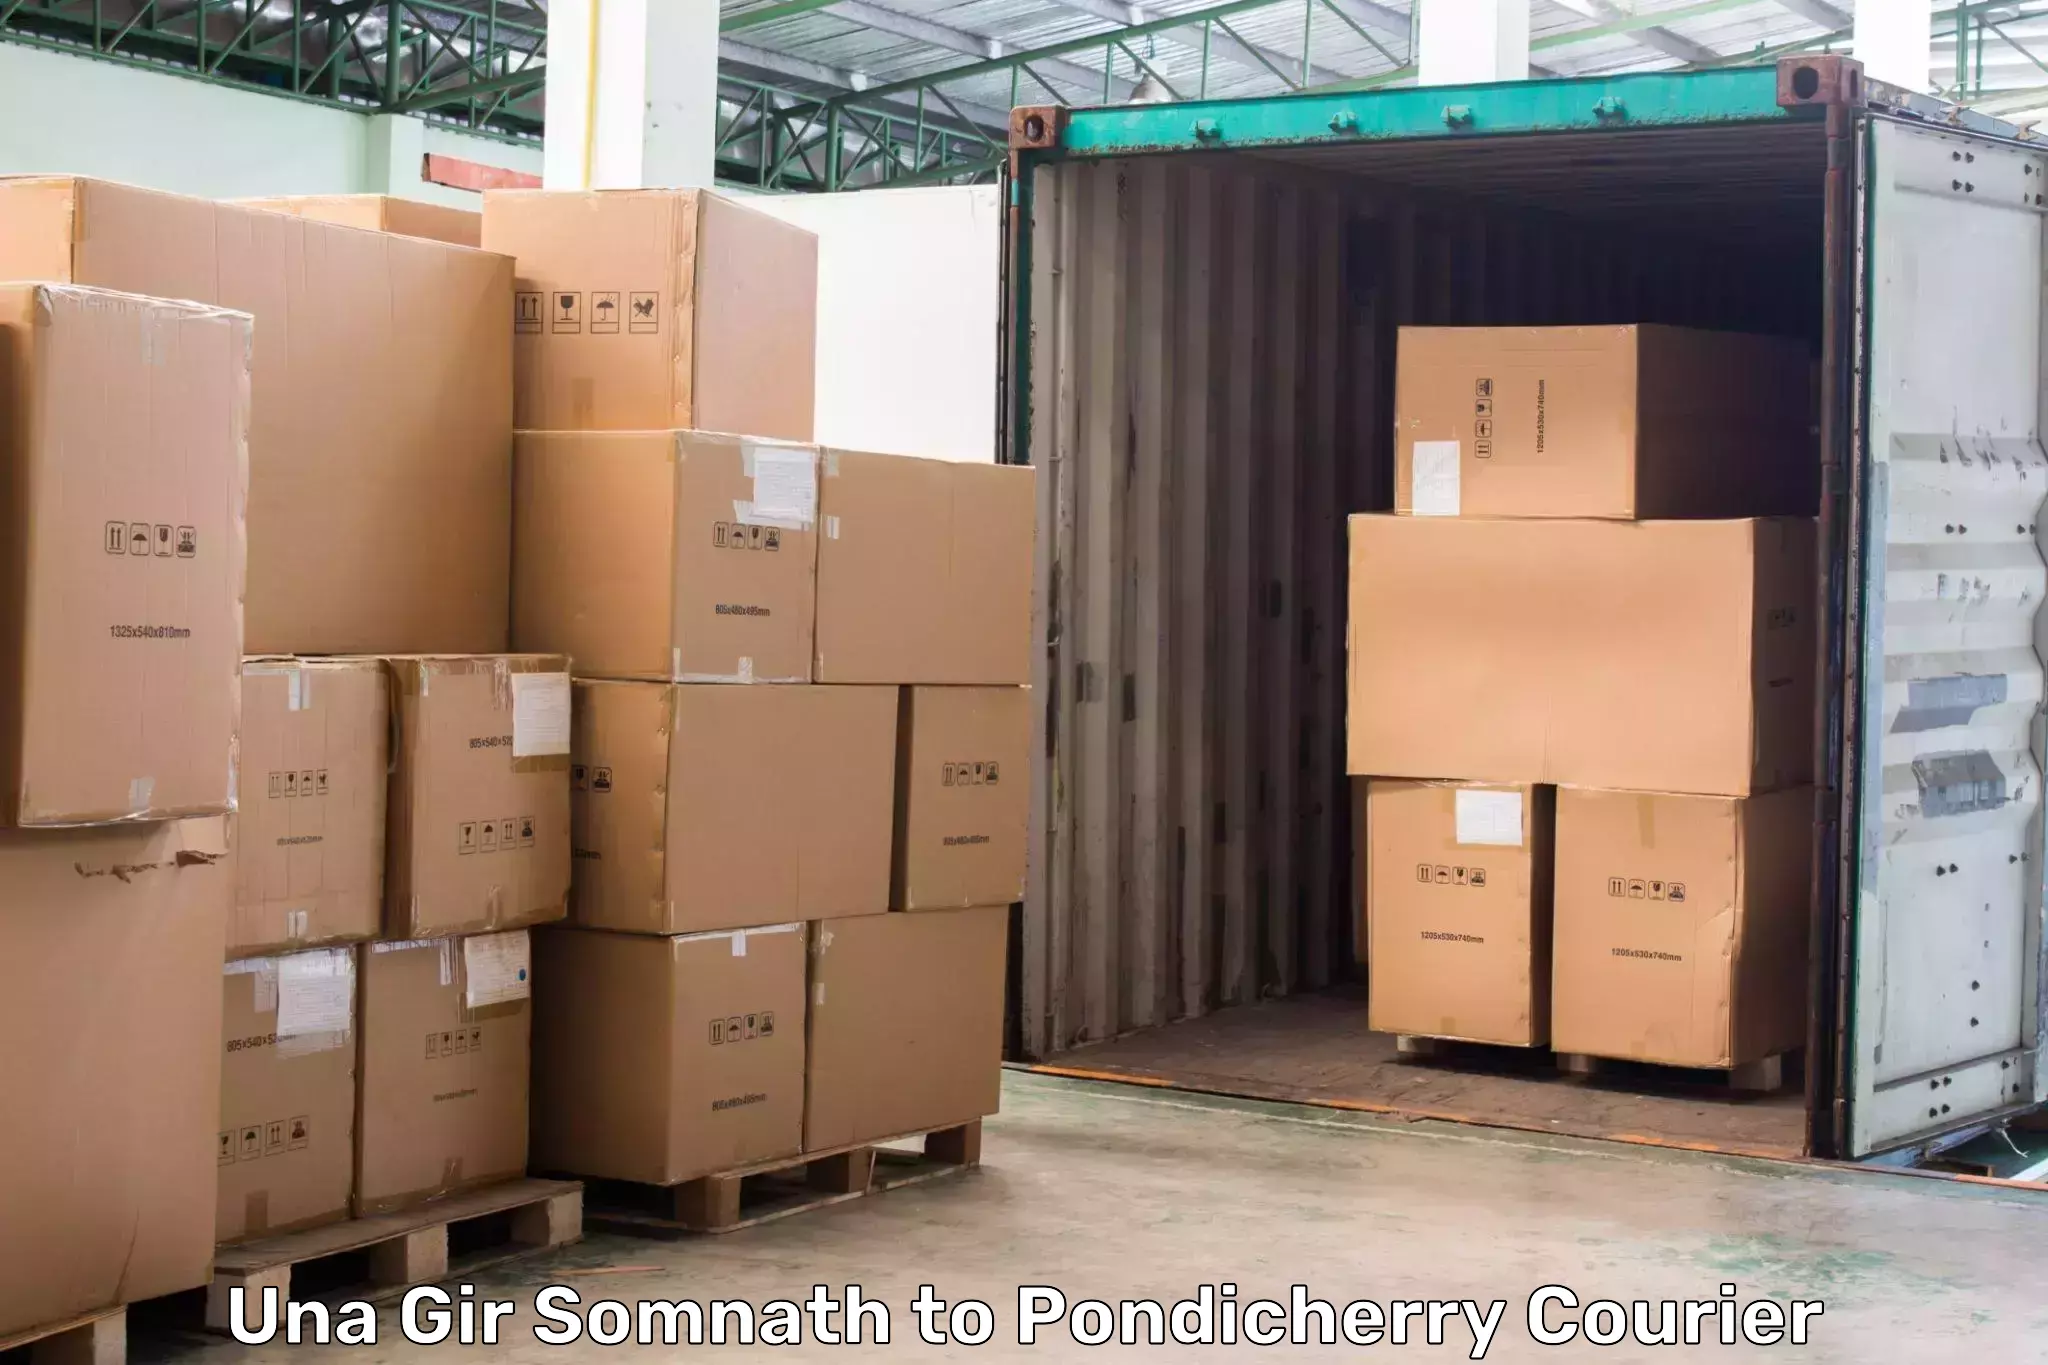 24/7 courier service Una Gir Somnath to Pondicherry University